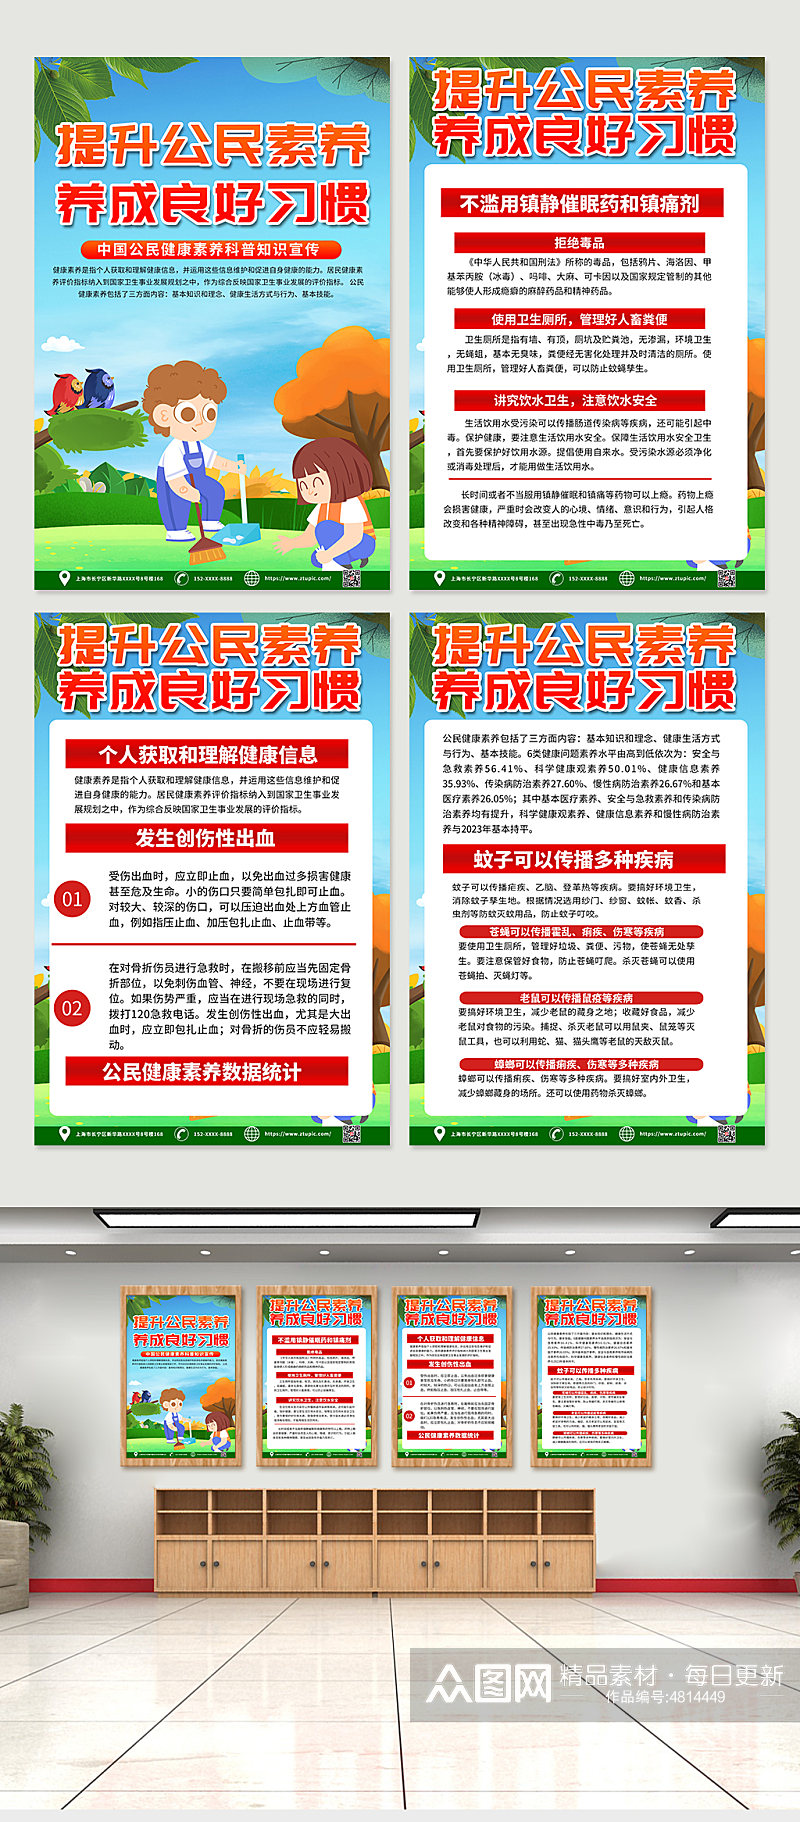 大气时尚中国公民健康素养宣传海报模板素材